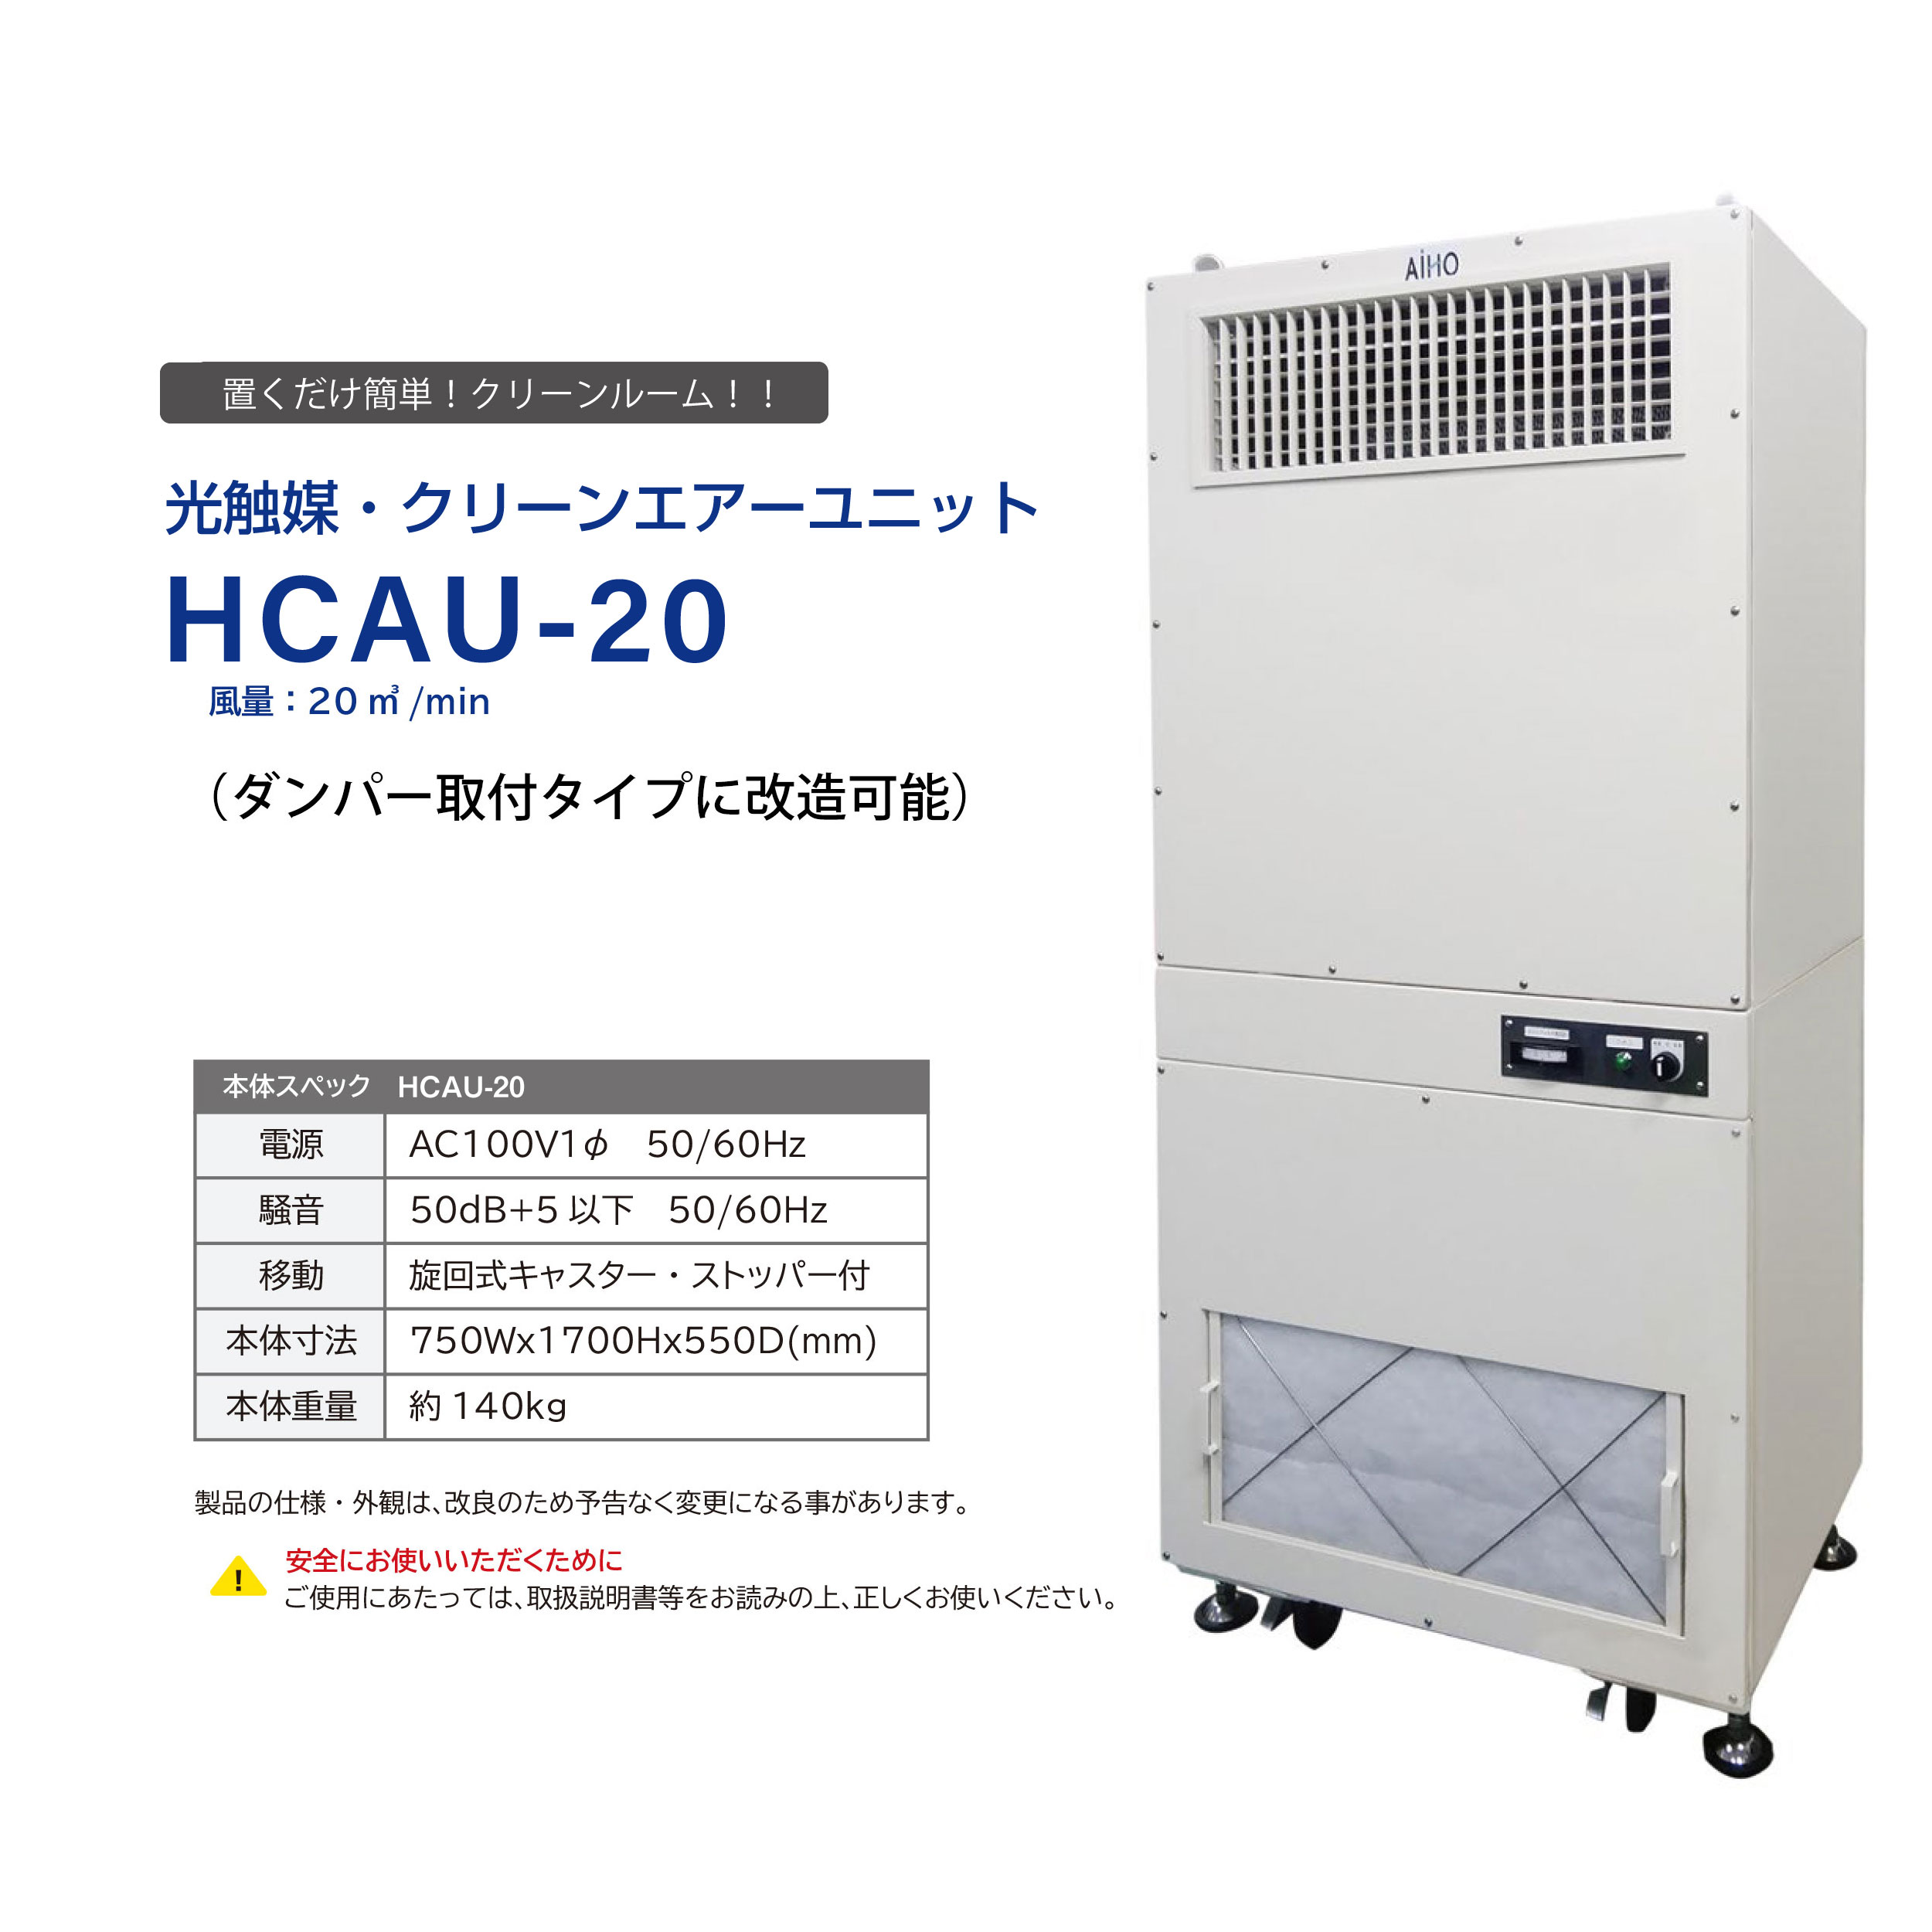 HCAU-20